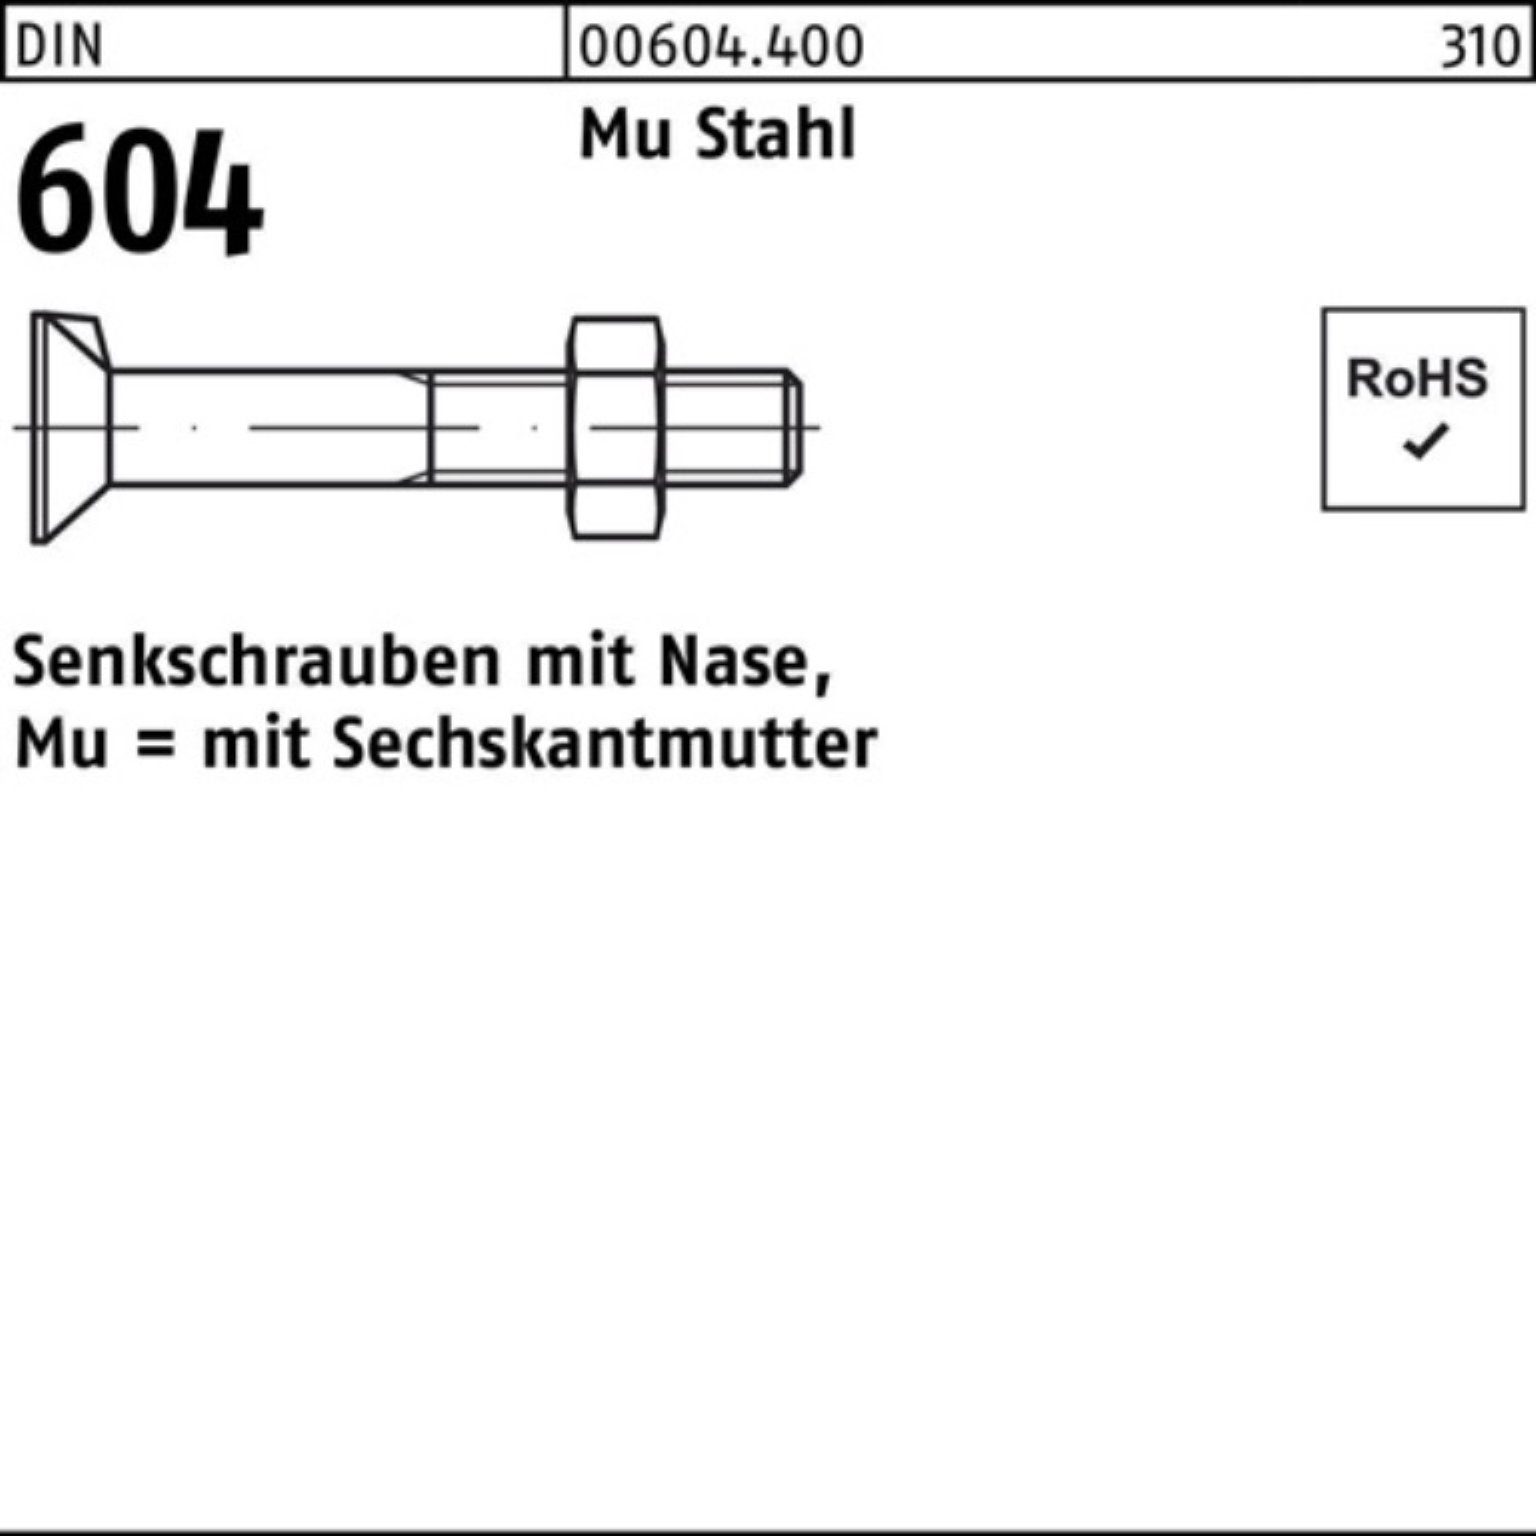 Reyher Senkschraube 200er Pack Senkschraube DIN 604 Nase/6-ktmutter M8x 20 Mu Stahl 4.6 20